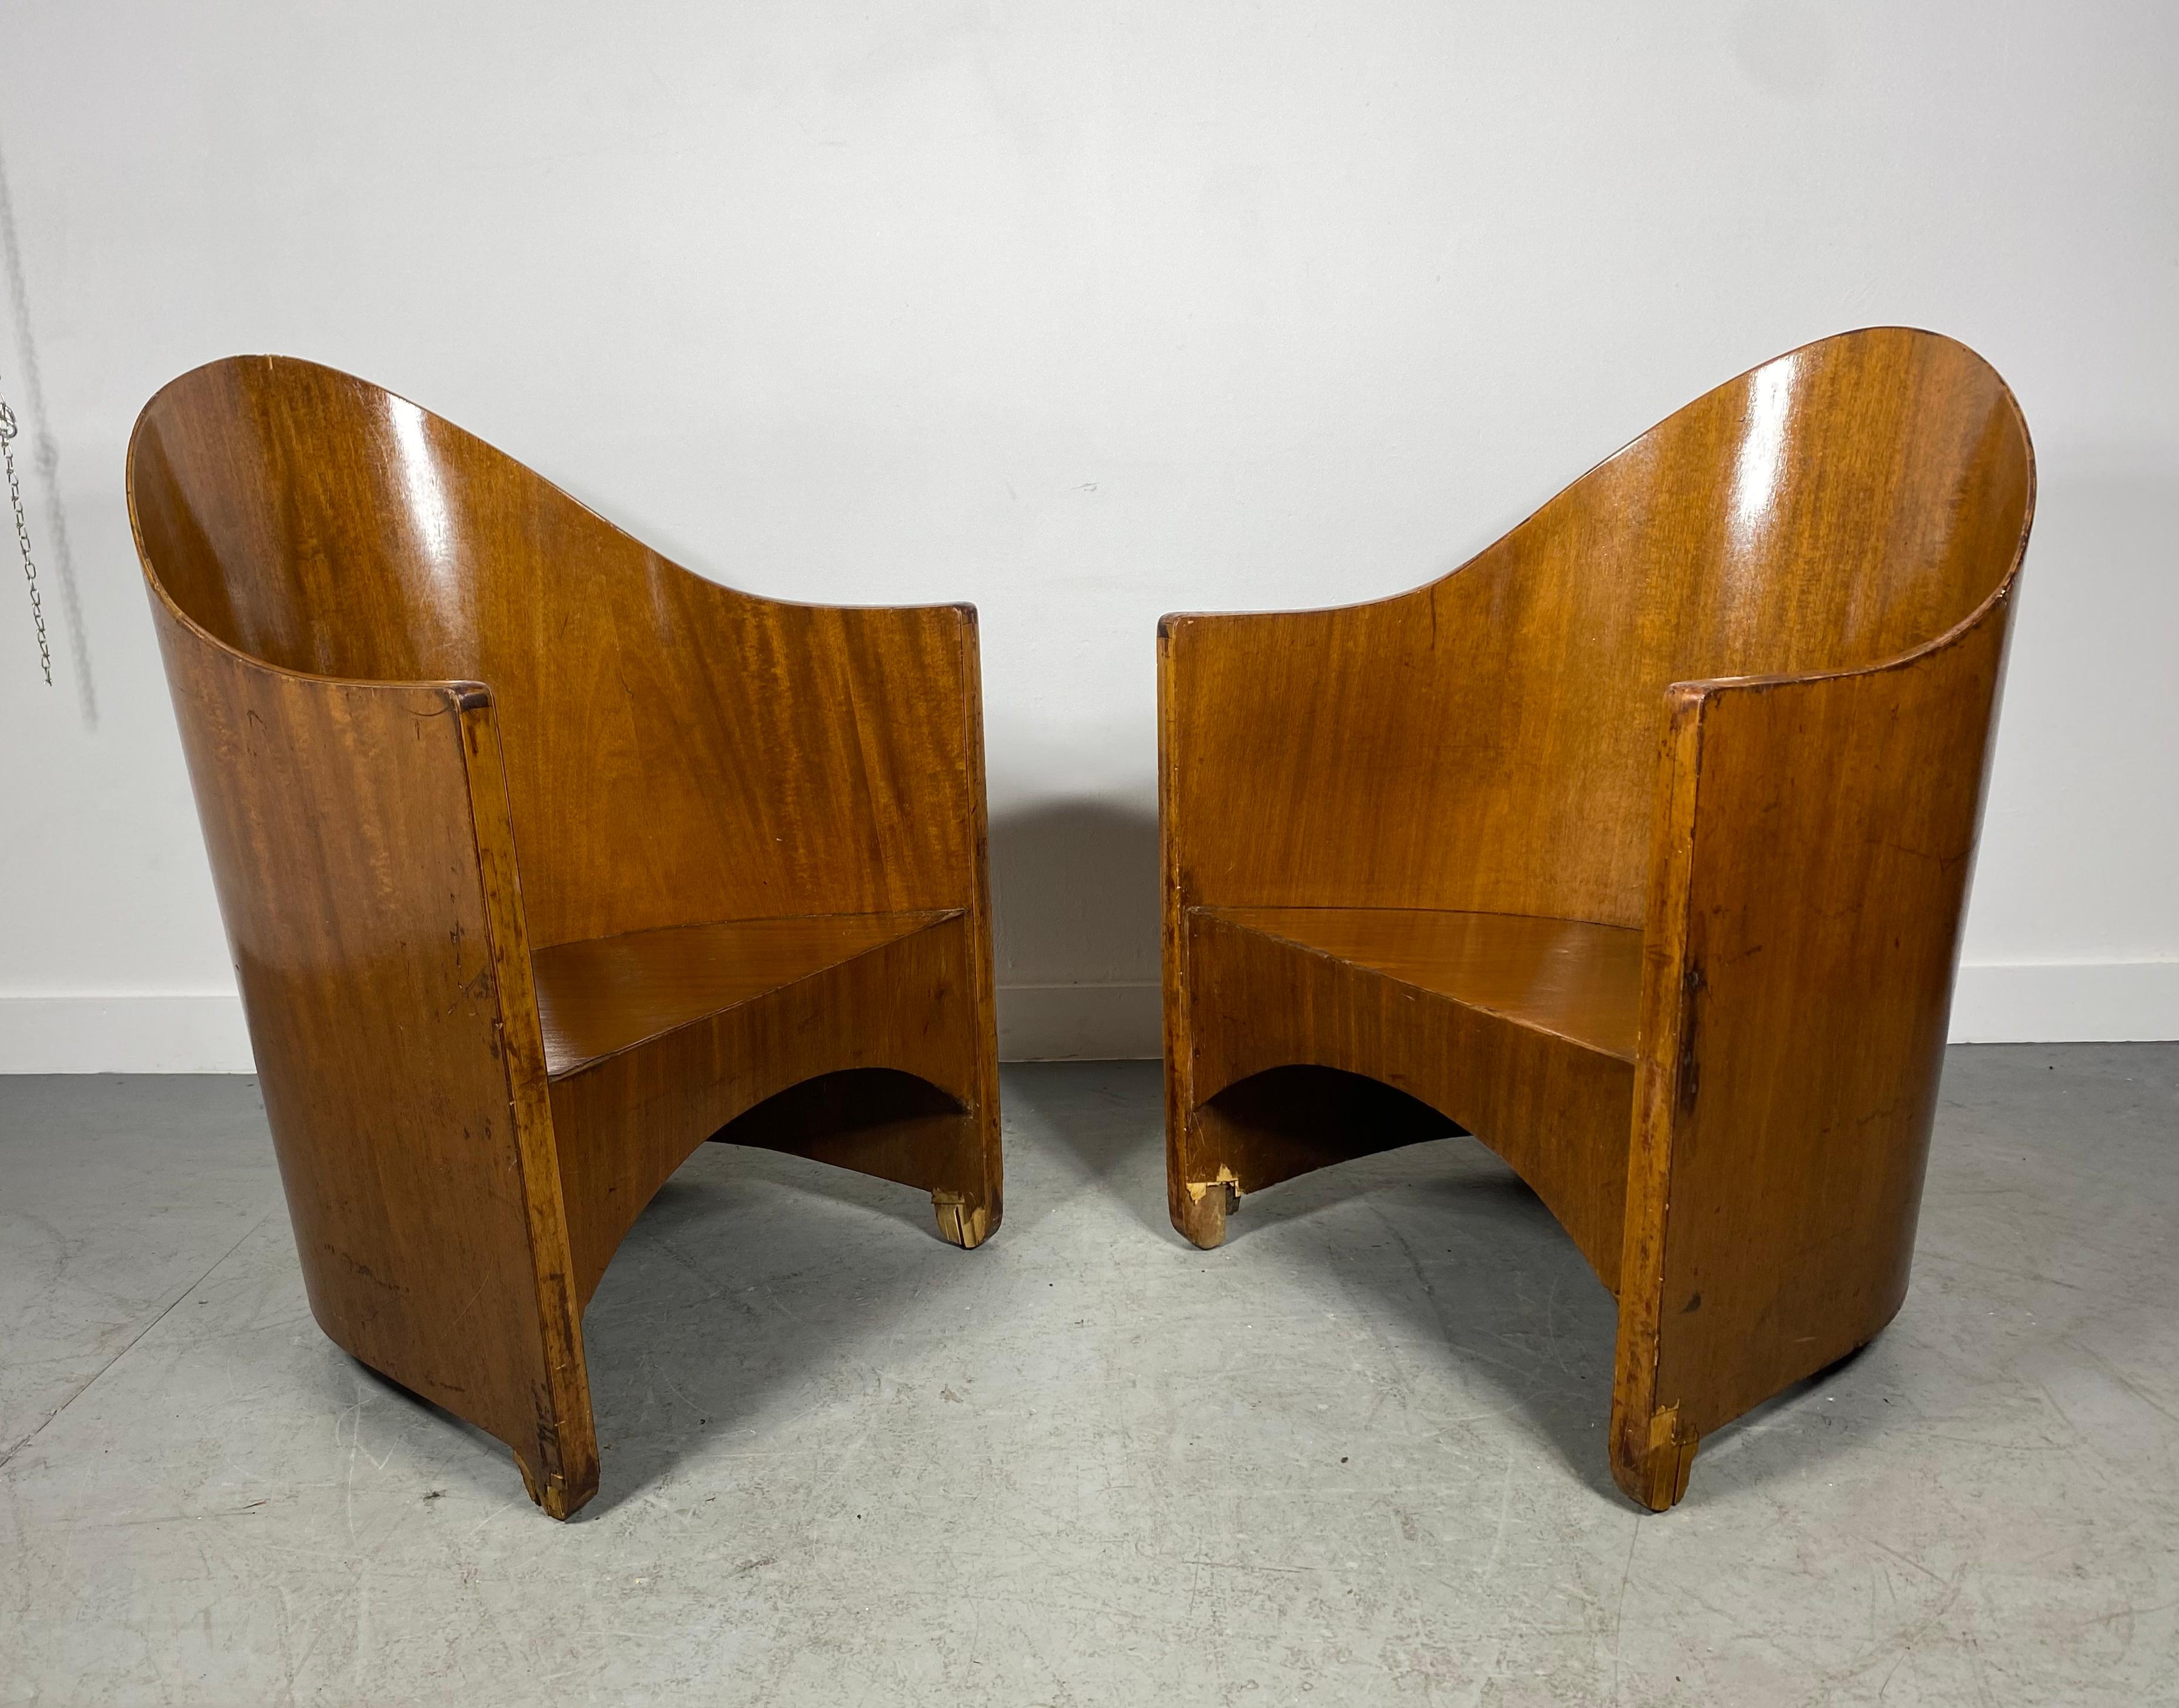 Extrem seltenes Paar Modernist Arm Chairs von Walter von Nessen entworfen,  c.1929..Stühle behalten ihre ursprüngliche Farbe und Patina, sind restaurierungsbedürftig, vor allem die Füße (Furnier)..Aus meinem kleinen Fundus  Nachforschungen ergaben,